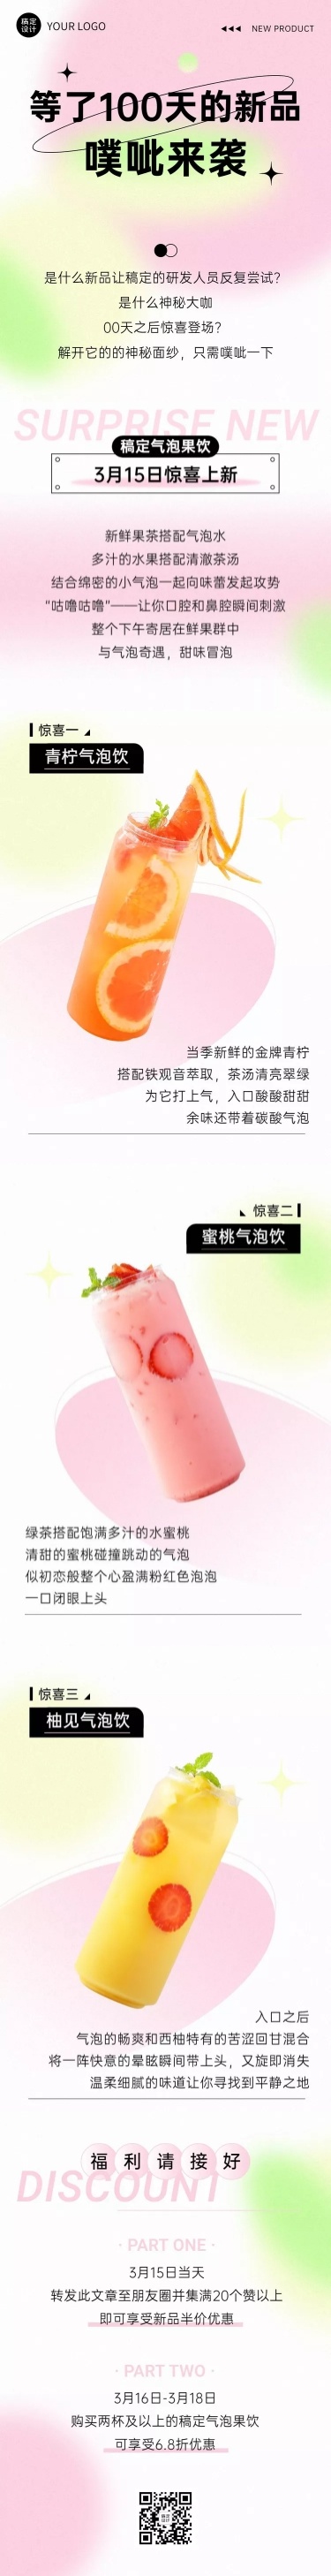 奶茶饮品产品营销文艺感文章长图